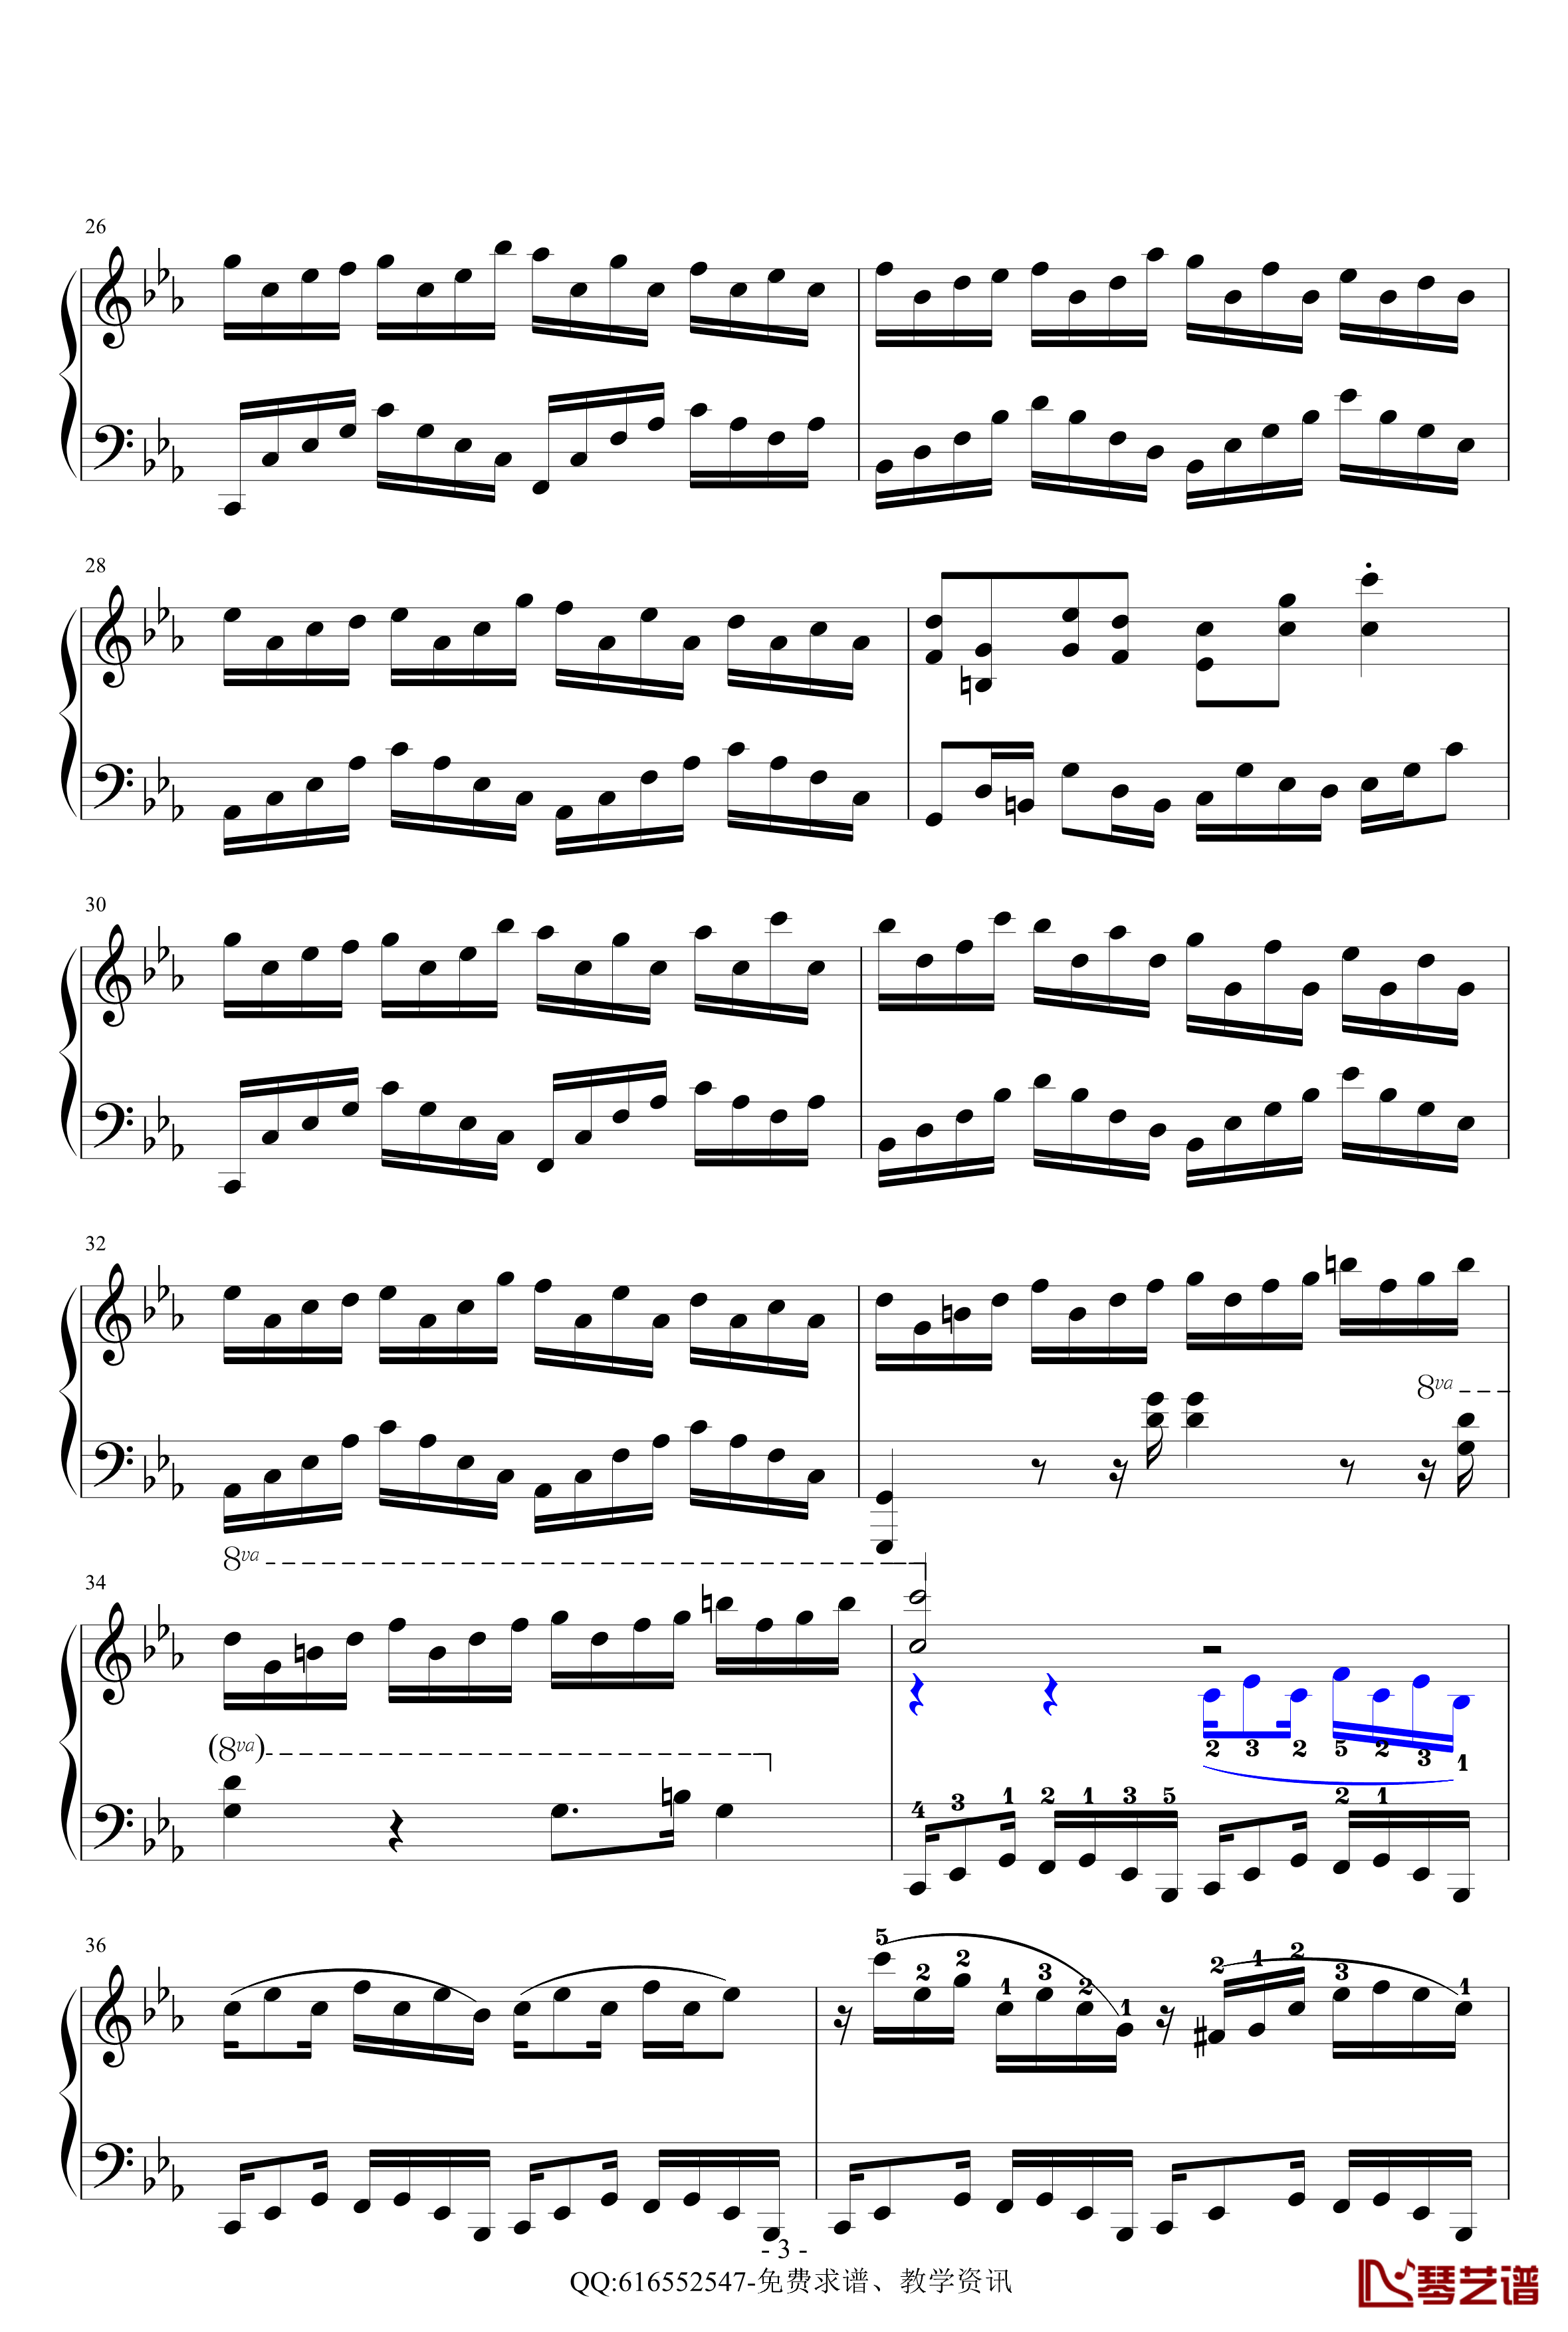 克罗地亚狂想曲钢琴谱-精致版-金龙鱼170427-马克西姆-Maksim·Mrvica3